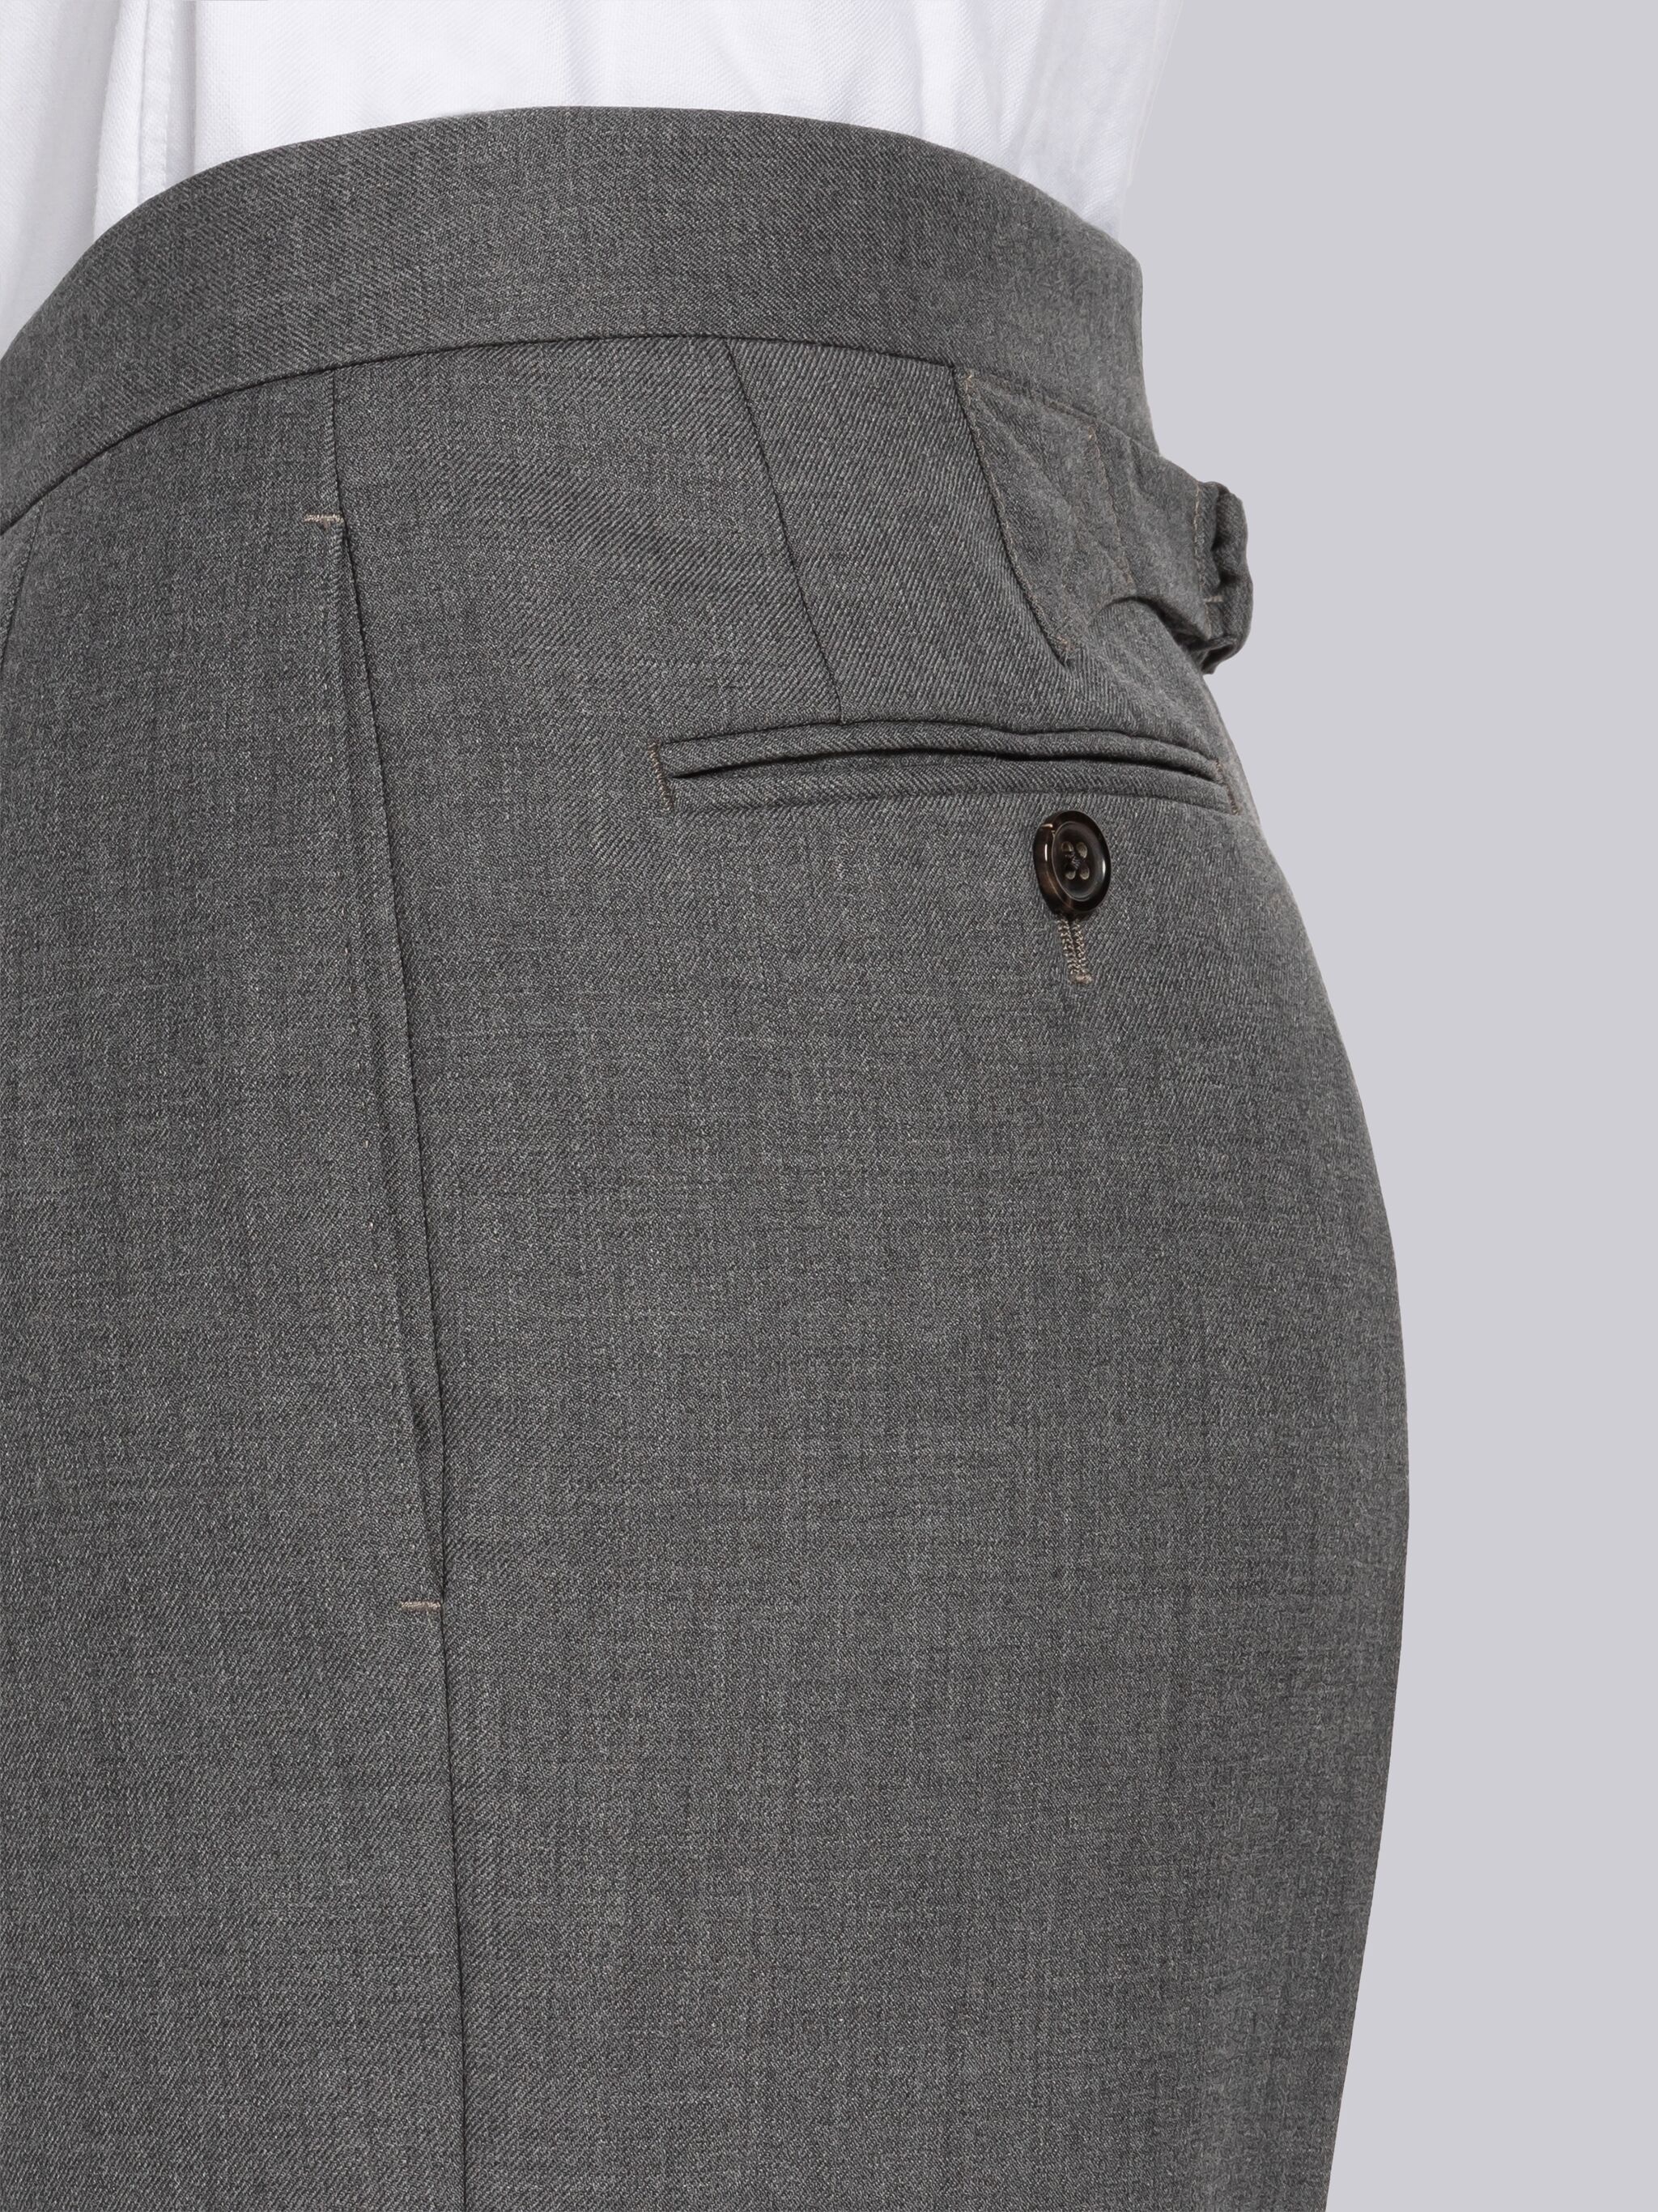 Medium Grey Super 120's Twill Menswear Fit Classic Trouser - 7